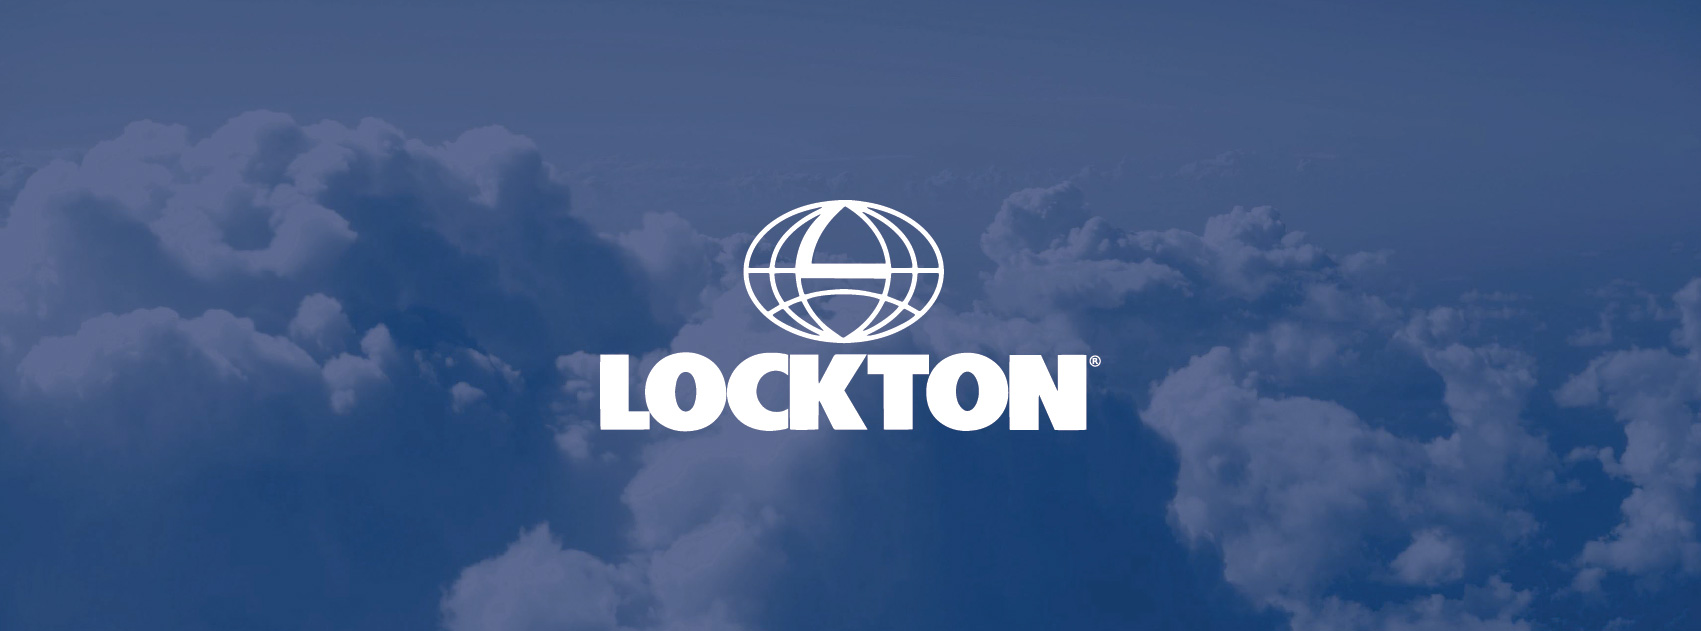 27G 1196-18260 Lockton Cloud Tx Website Image no text 01